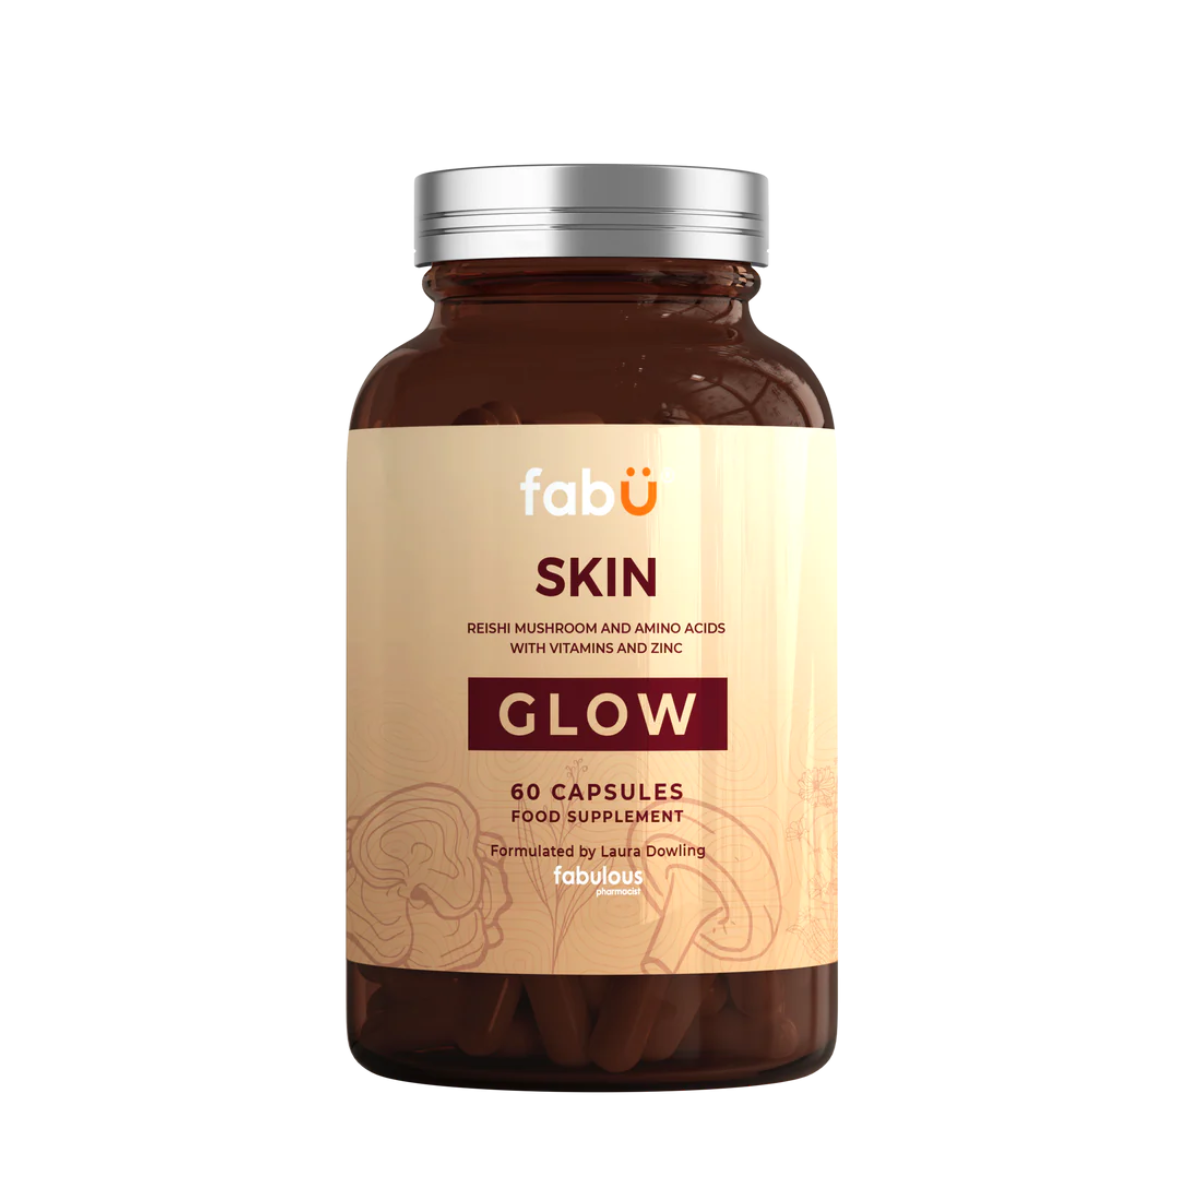 fabÜ Skin Glow